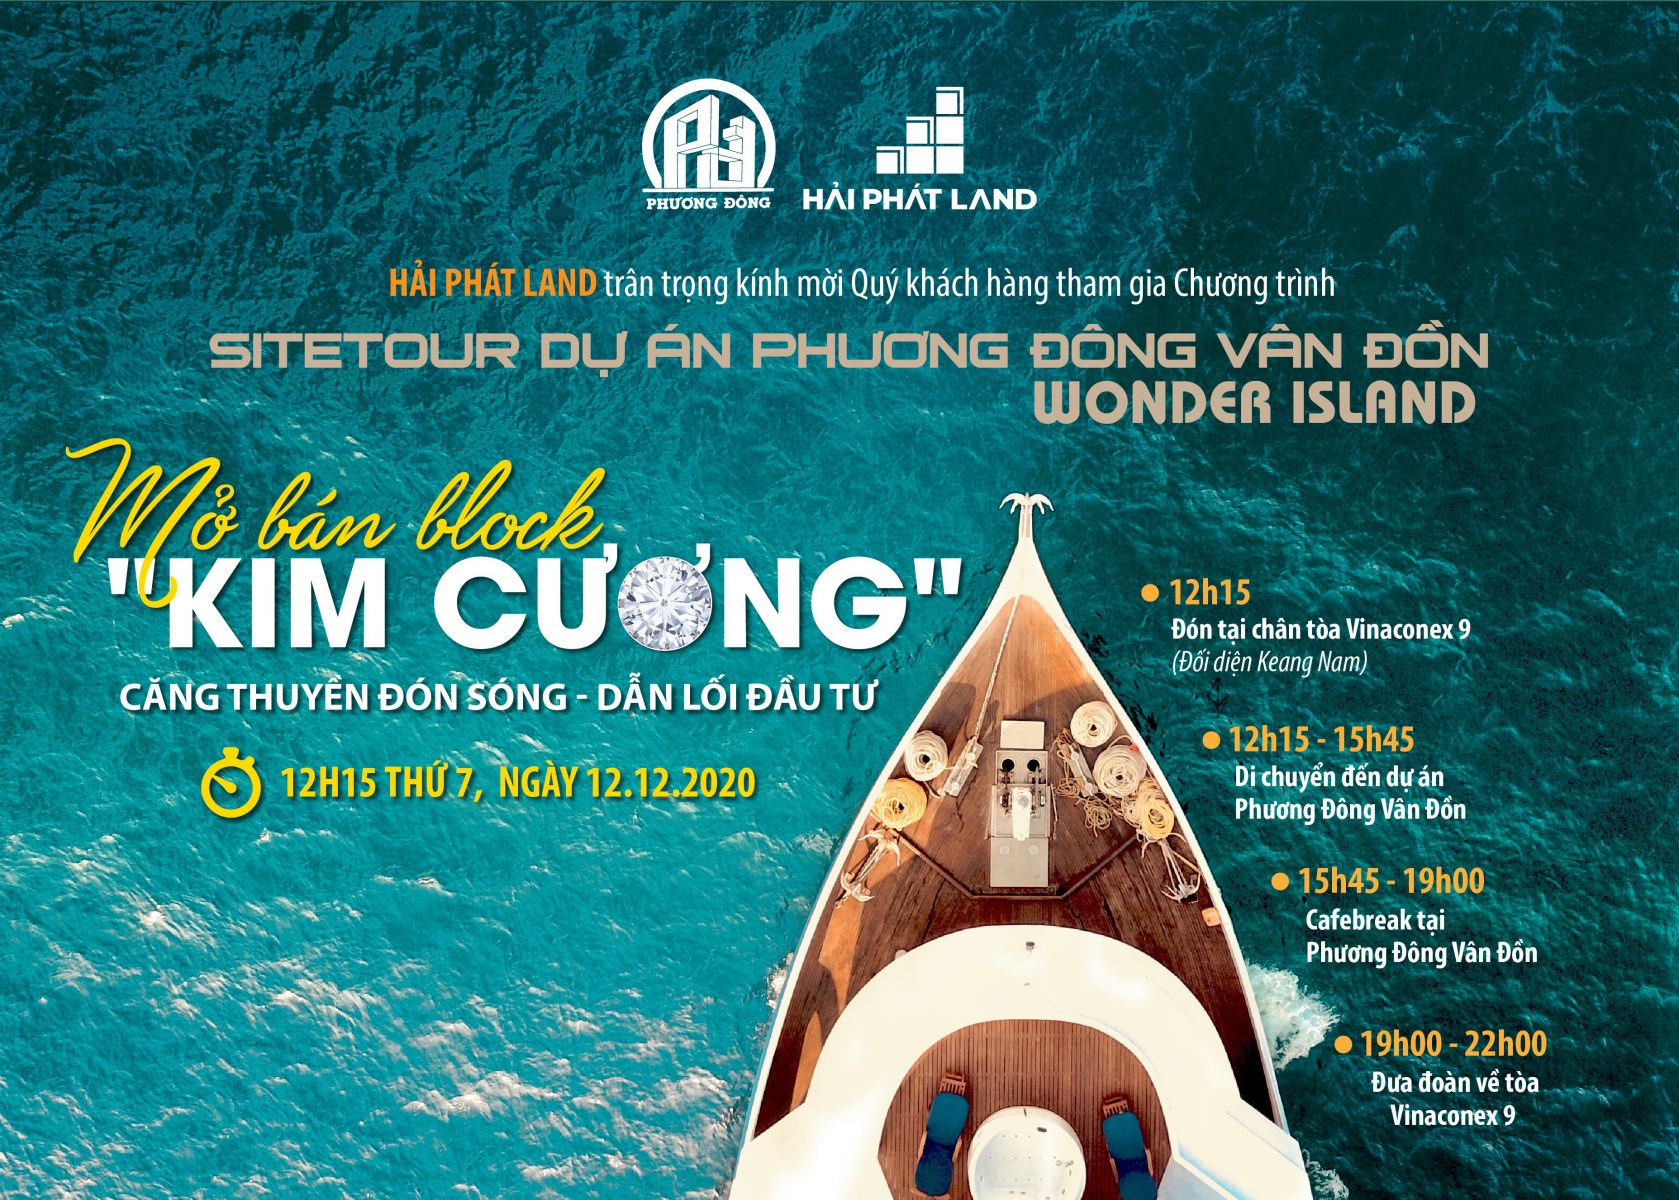 Sitetour dự án Phương Đông Vân Đồn - Wonder Island Mở bán block "Kim cương" 